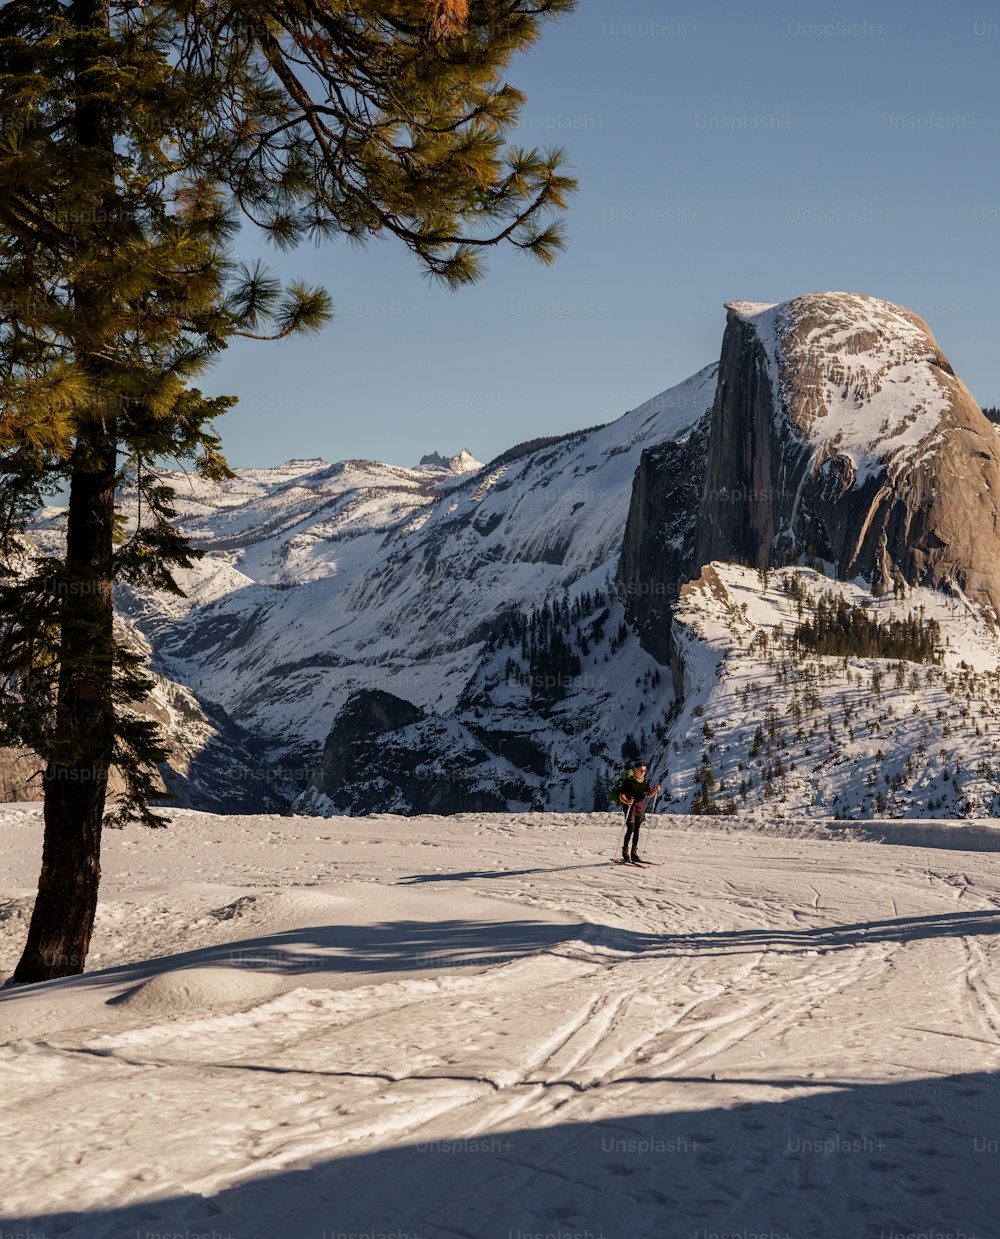 Una persona parada en la nieve cerca de una montaña